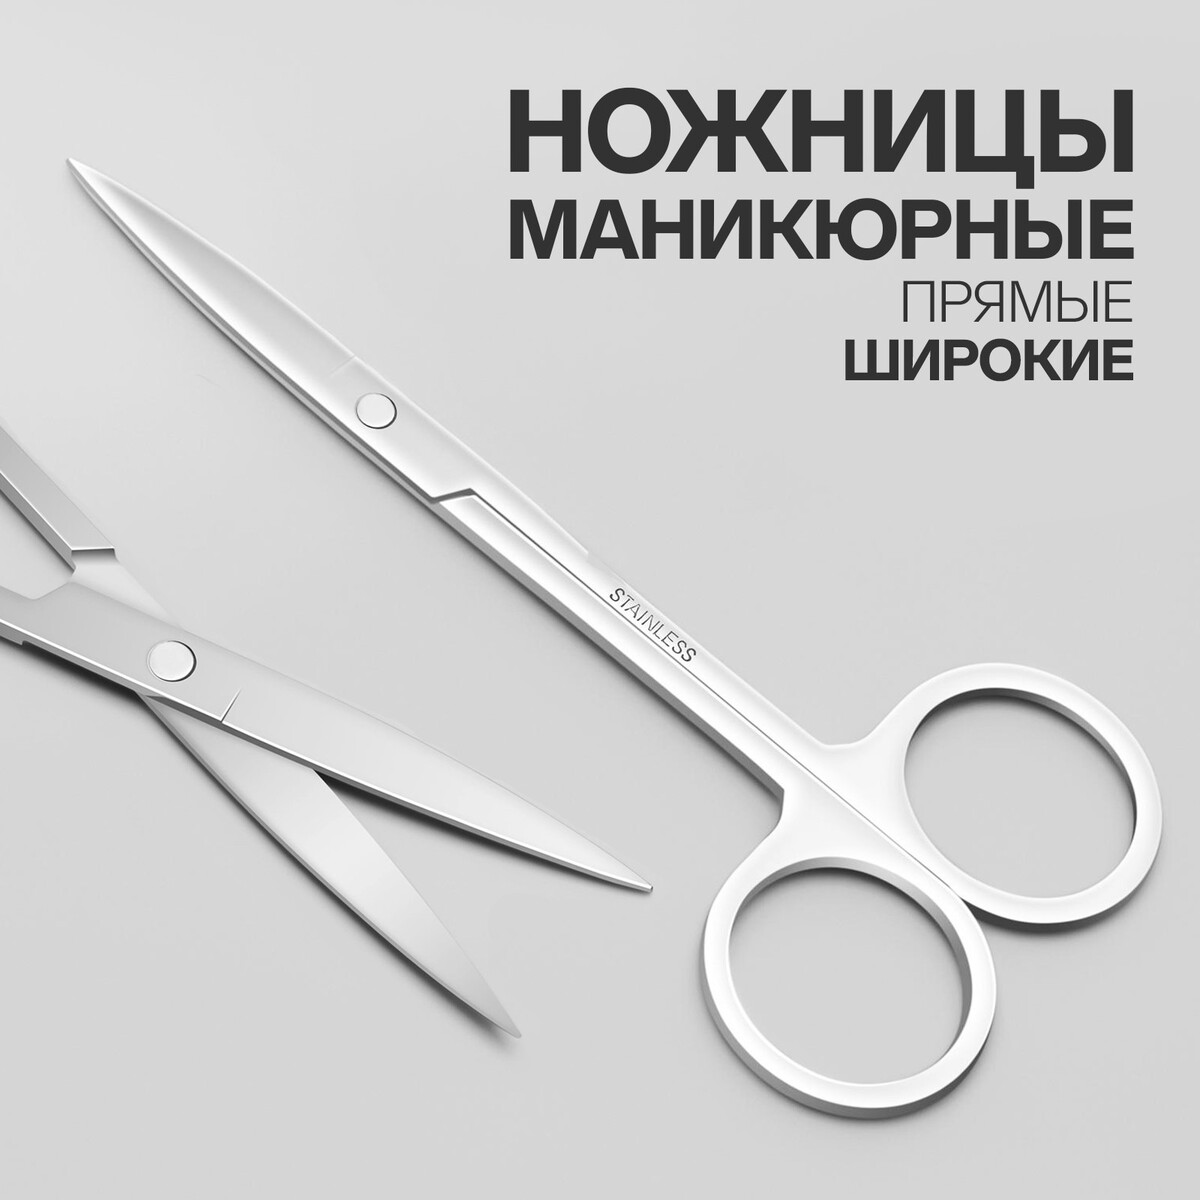 Ножницы маникюрные, прямые, широкие, 12 см, цвет серебристый ножницы маникюрные прямые узкие 9 см серебристый